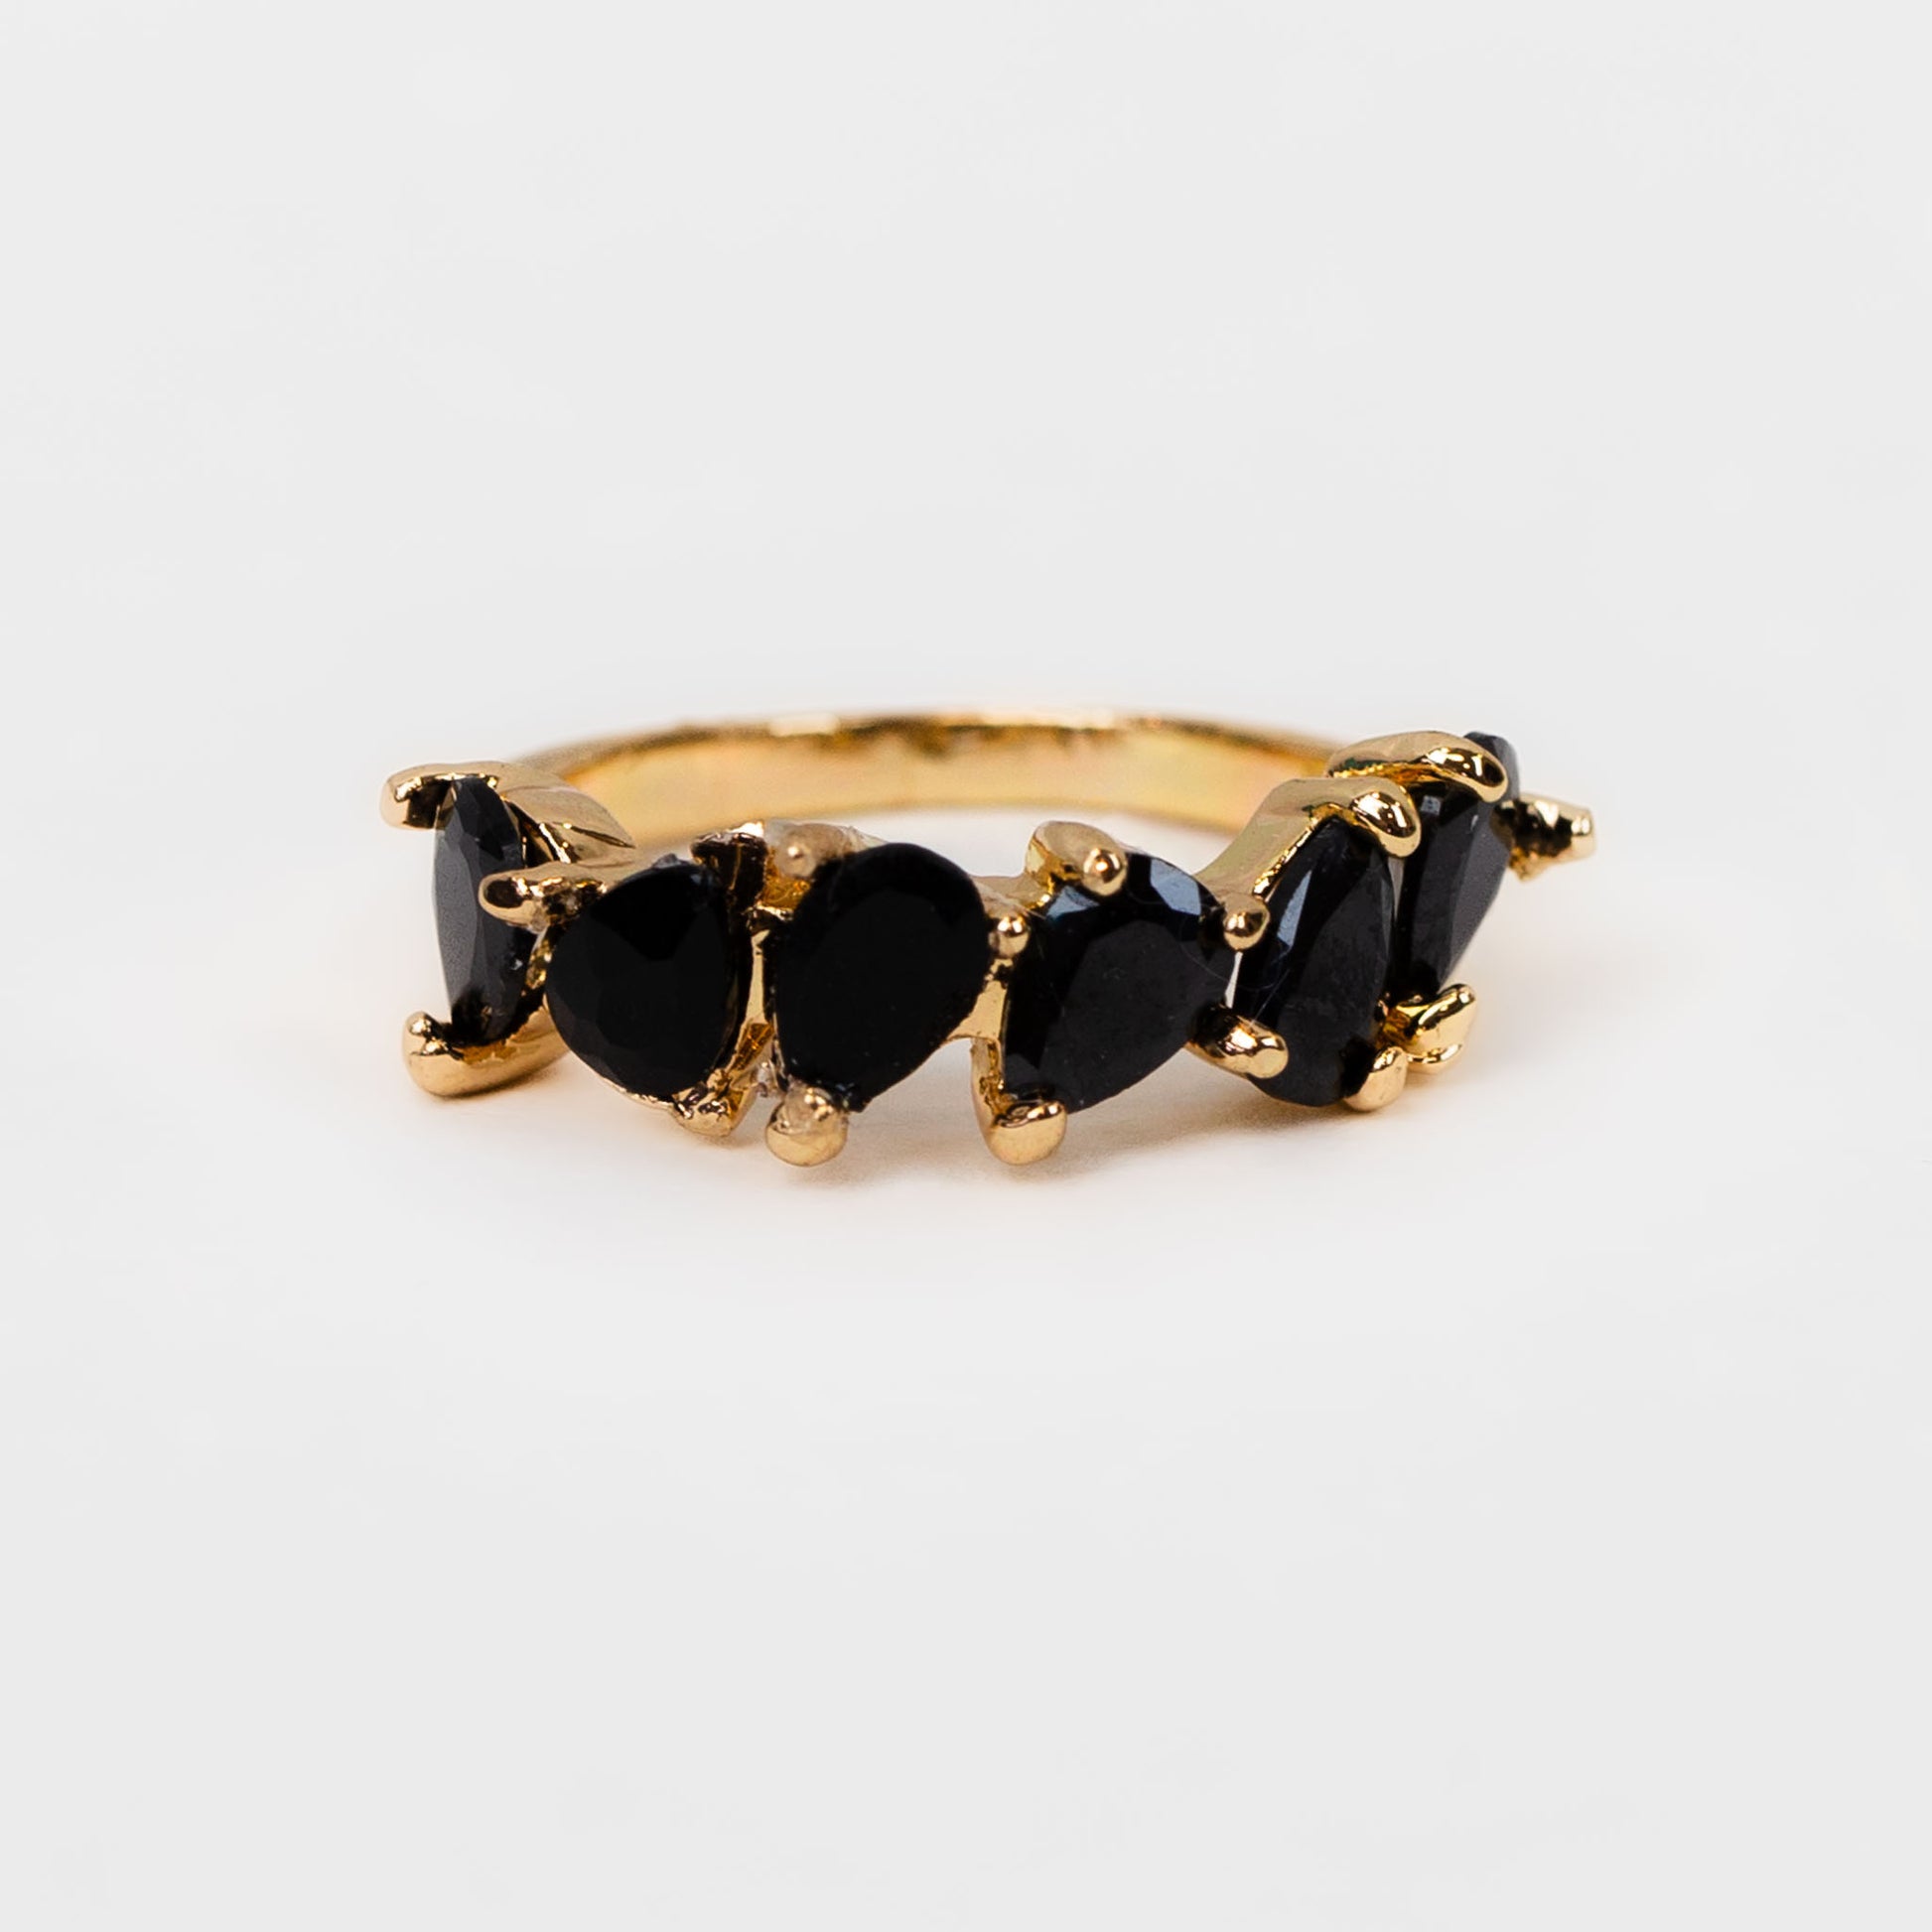 Inel cu pietre în formă de lacrimă - Negru, Auriu